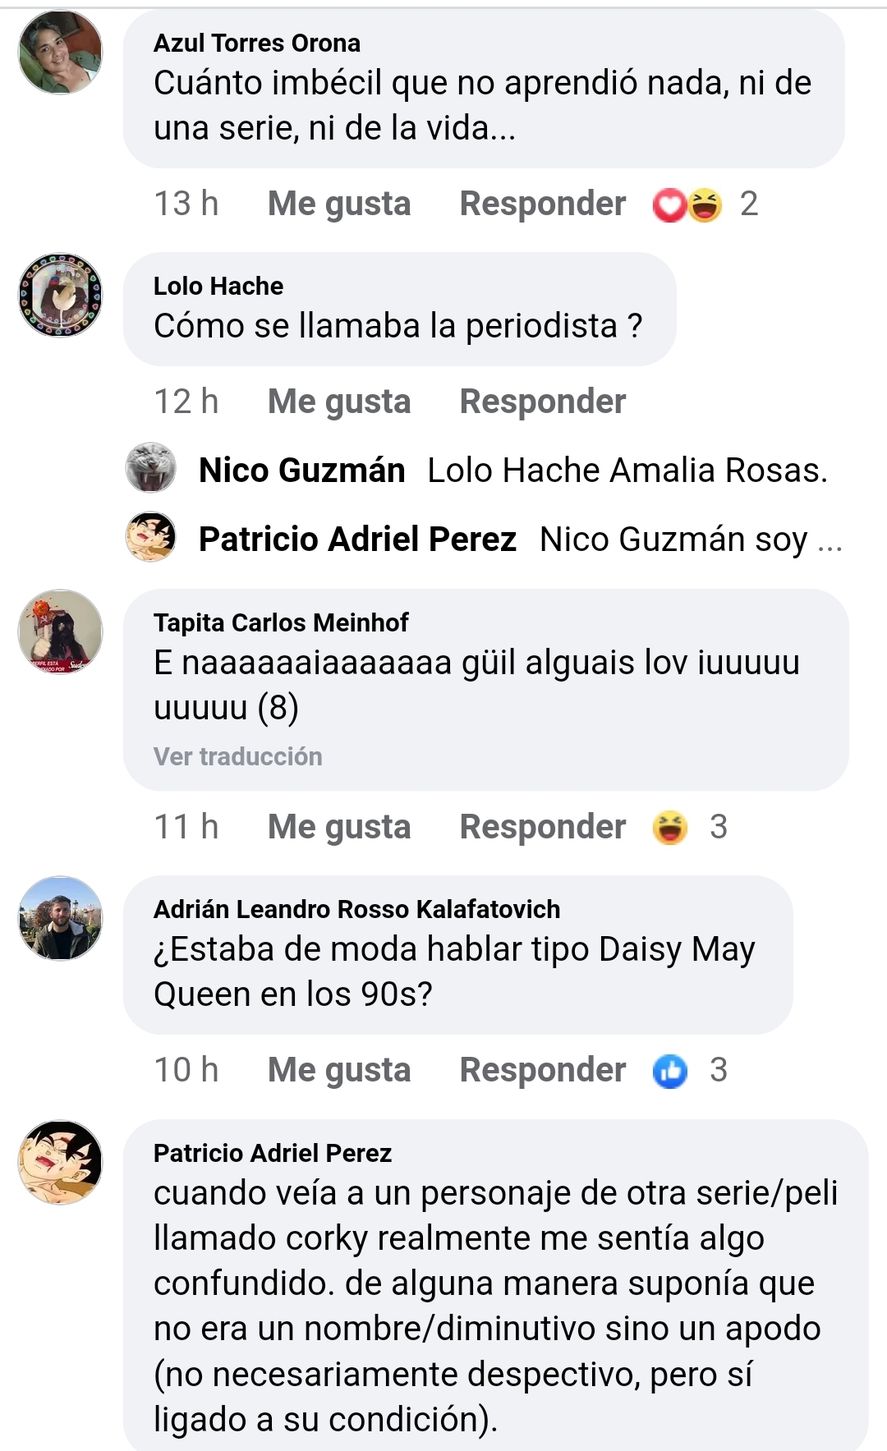 Comentarios en Facebook al posteo acerca de los 30 años de la primera emisión por Telefé de la serie "Corky", el joven con síndrome de down cuyo nombre se transformó en un insulto ofensivo en Argentina 